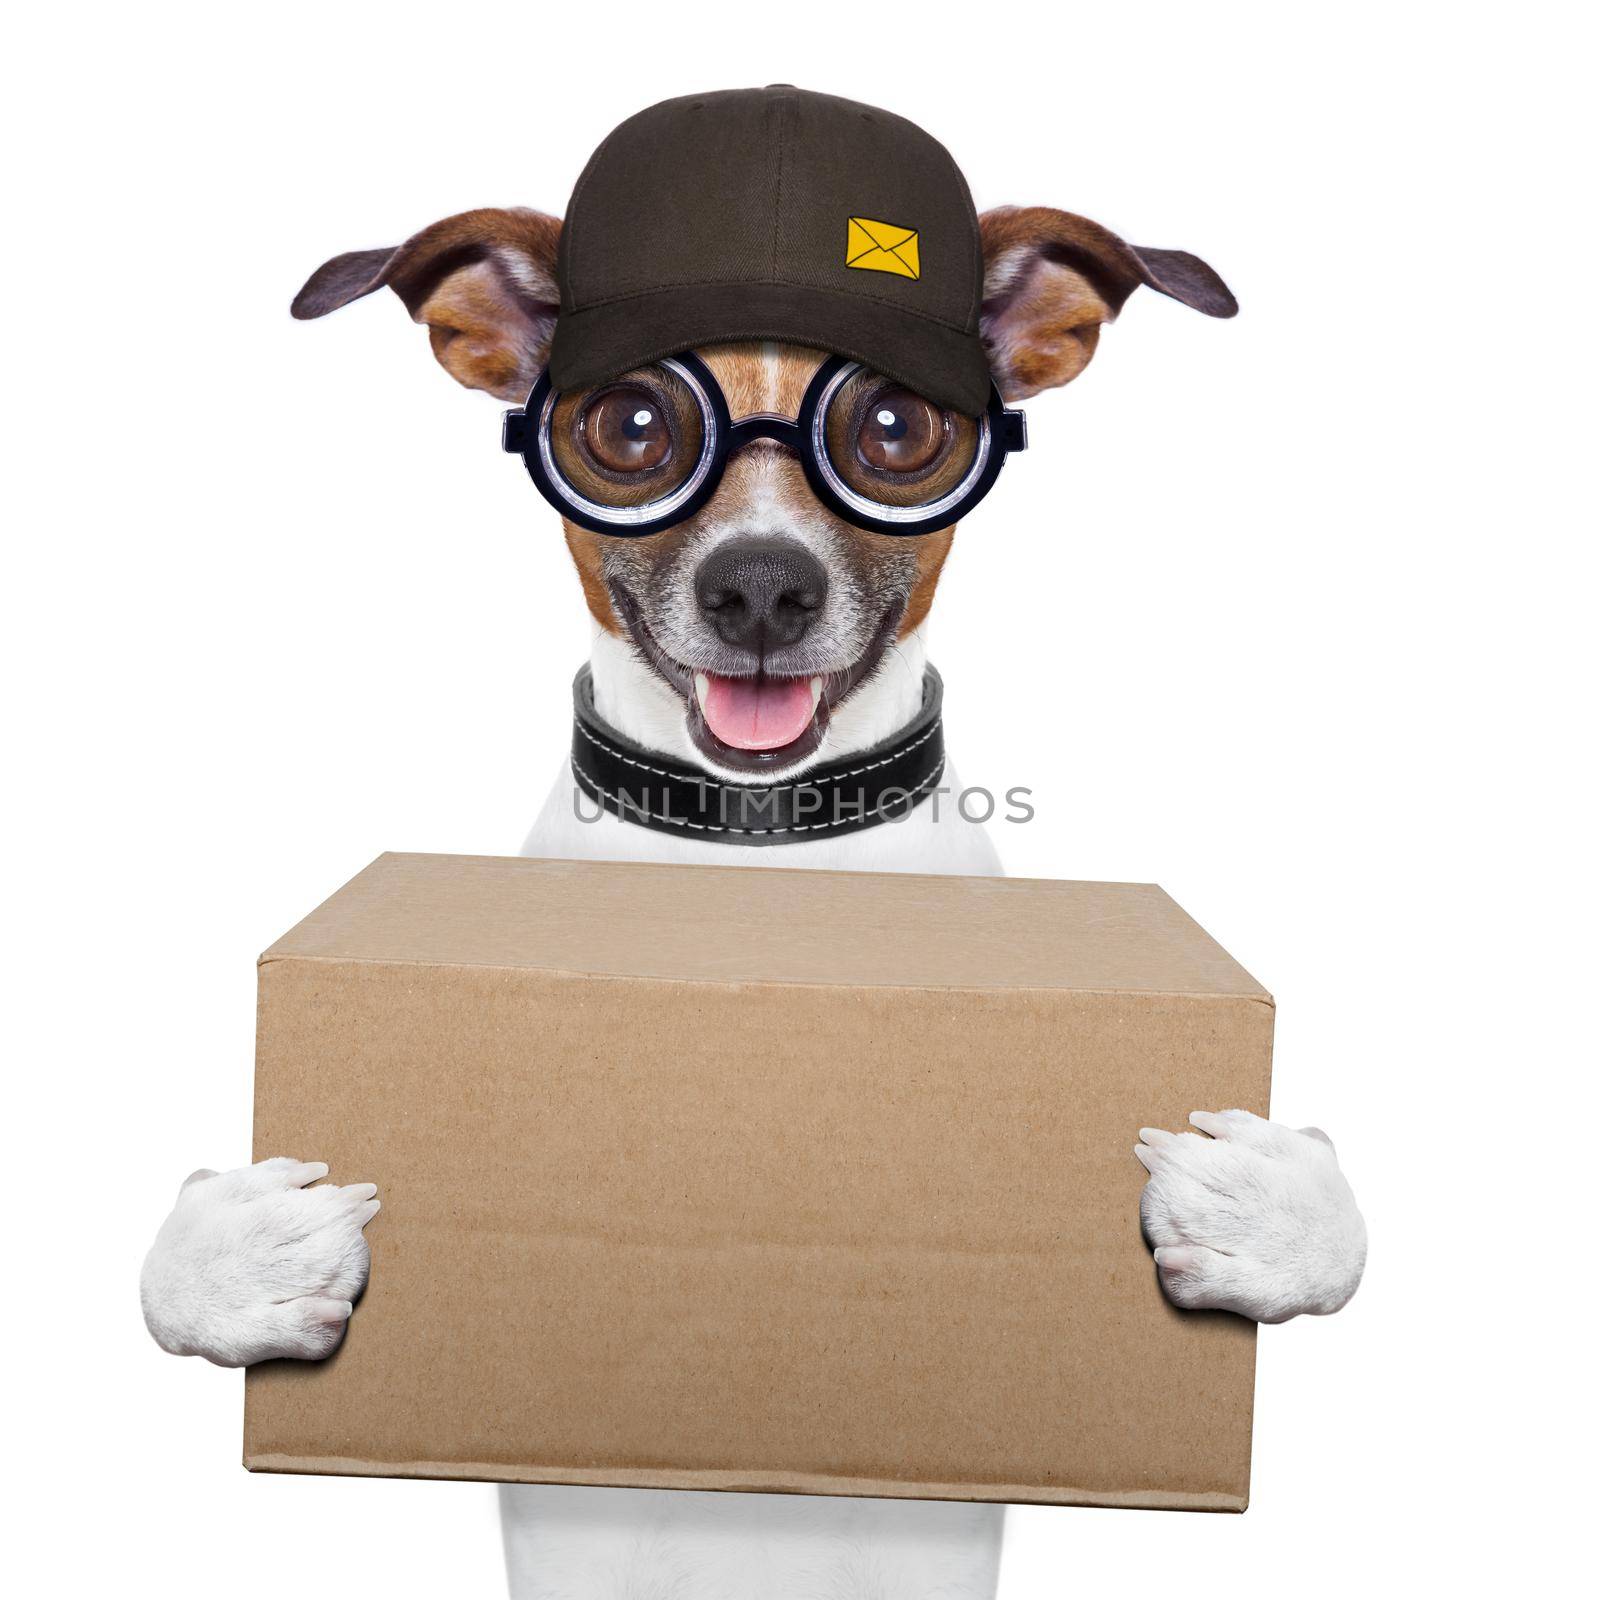 postal dog delivering a big brown package